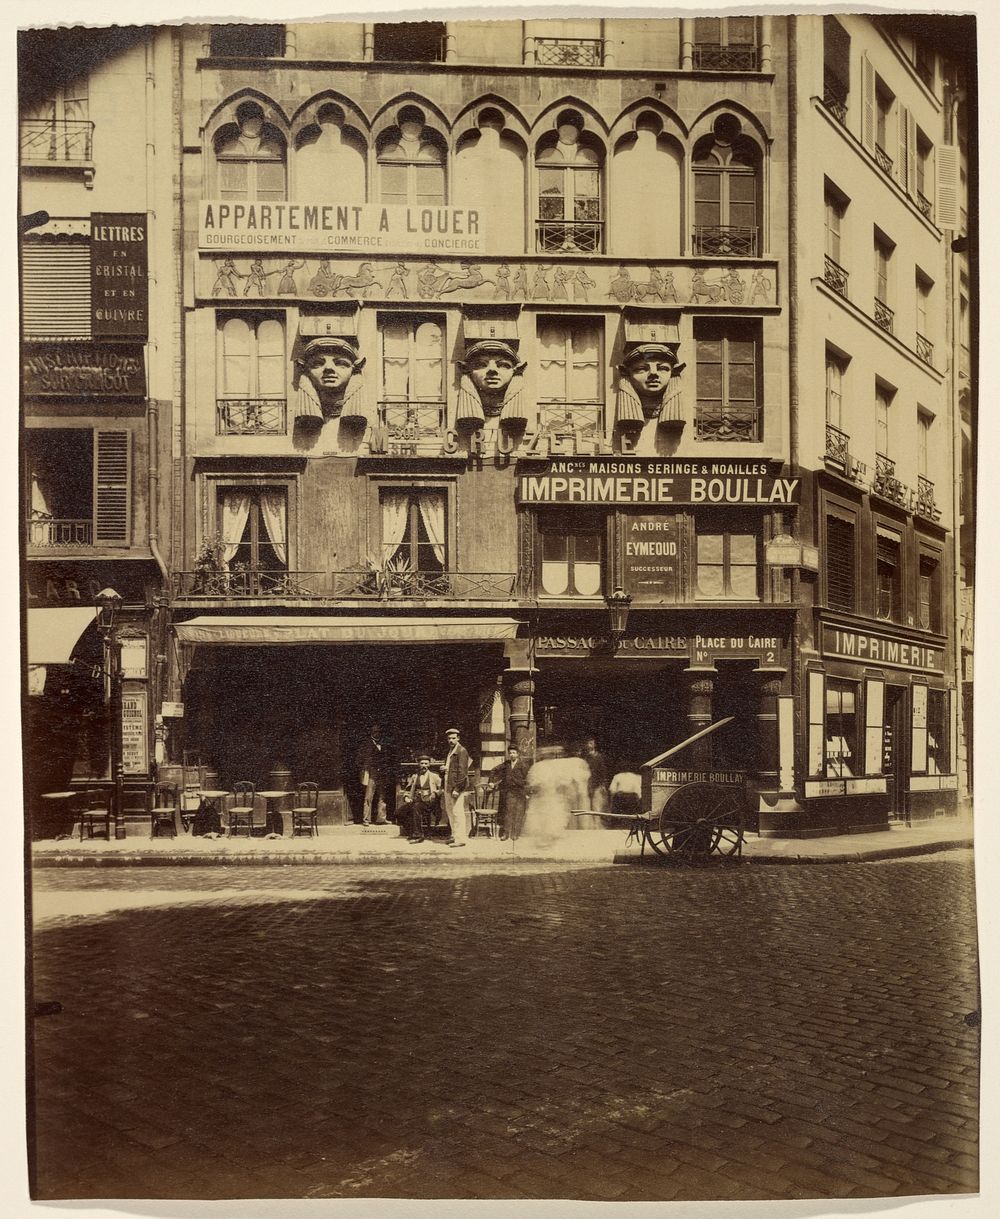 Maison Place du Caire 2 (Building, Place du Caire) by Eugène Atget